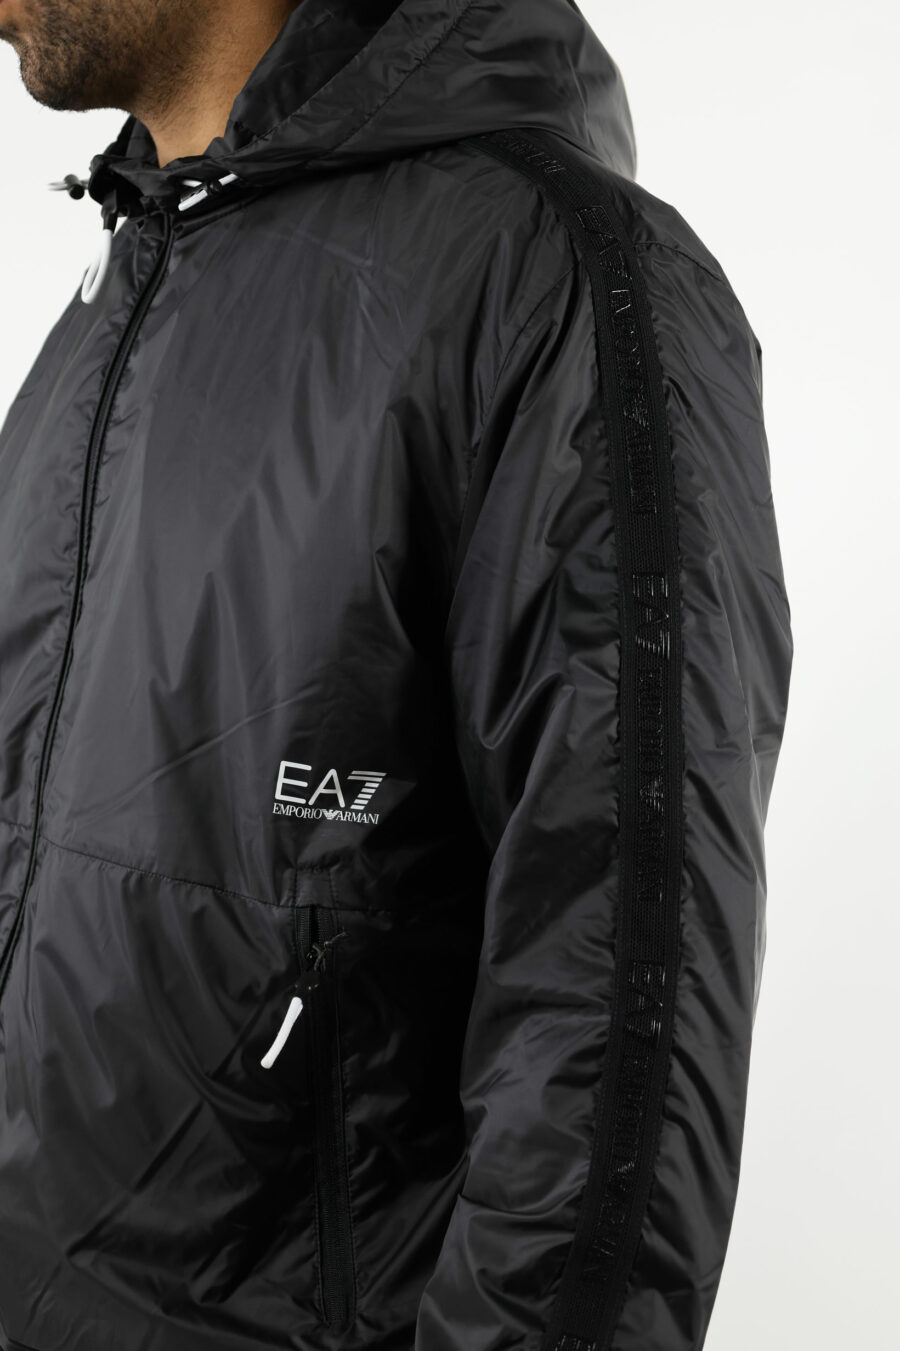 Schwarze wasserdichte Jacke mit Kapuze, weißen Seitenlinien und "lux identity"-Logo - 110956